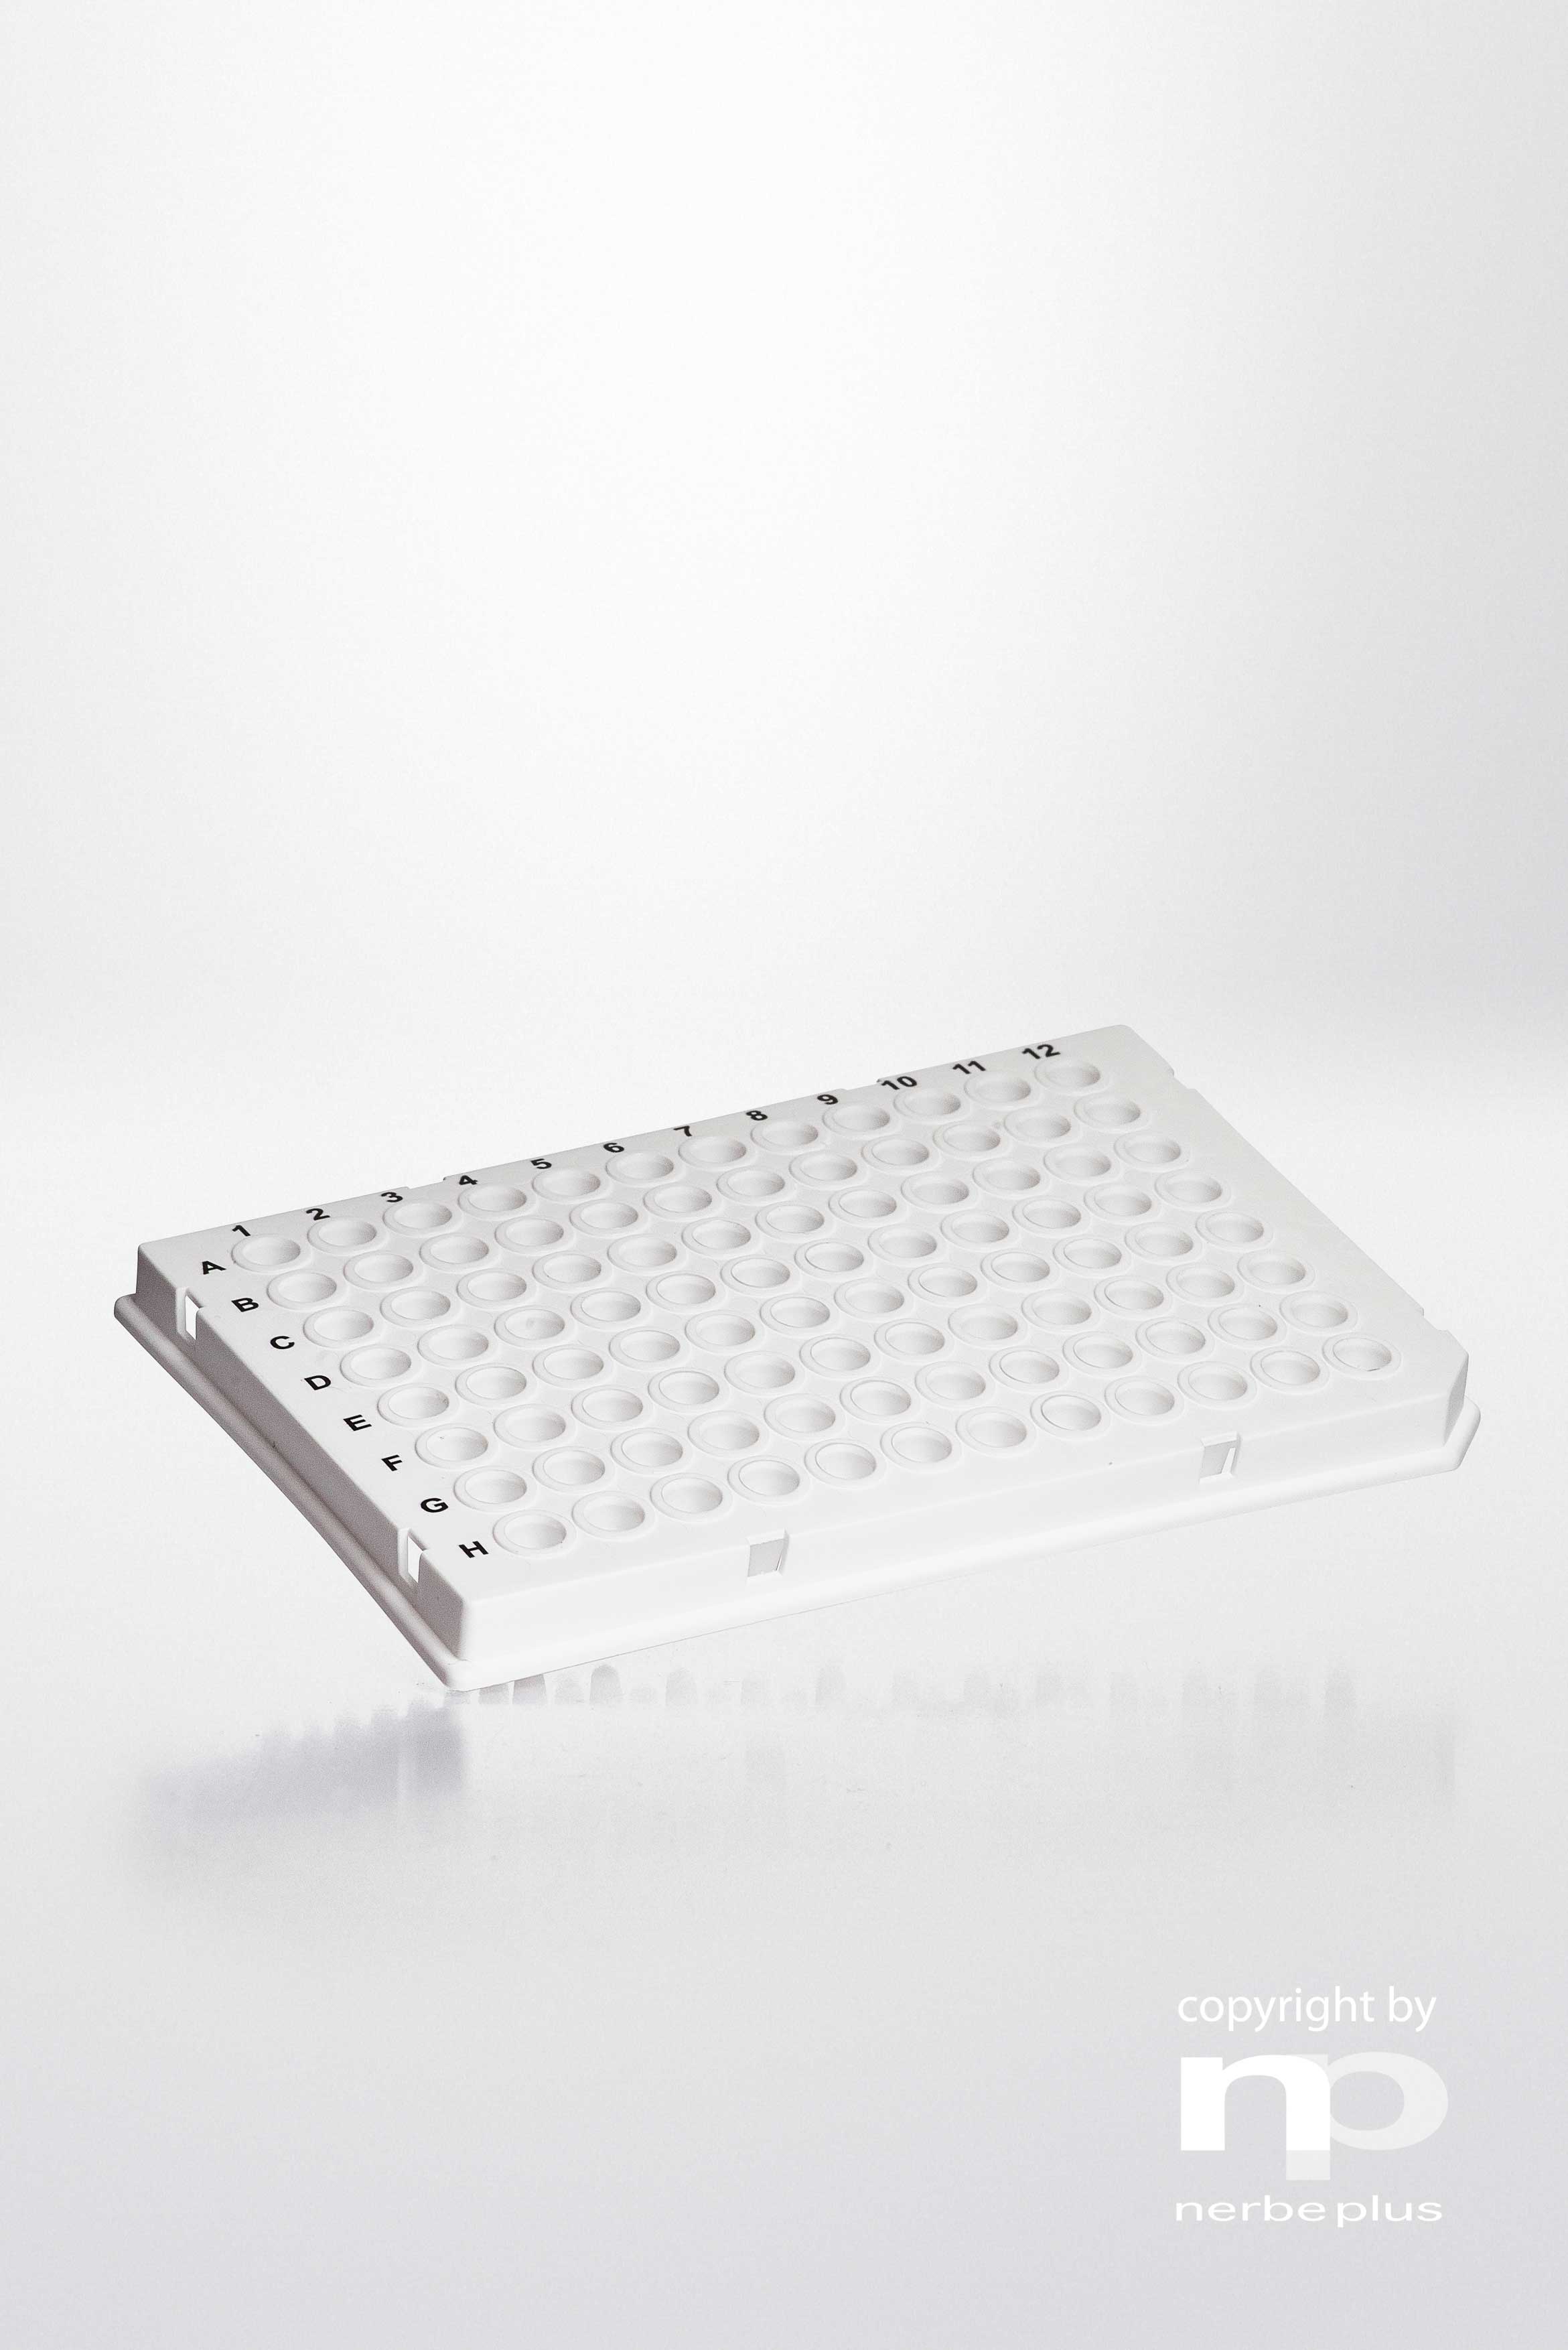 Placas para PCR. NERBE-PLUS. Capacidad: 96x0,2 ml. Tipo: Semi faldón. Resist. centrif (g): 6000. Color: Blanca. Esterilidad: PCR Ready. Low profile: Sí. qPCR: Sí